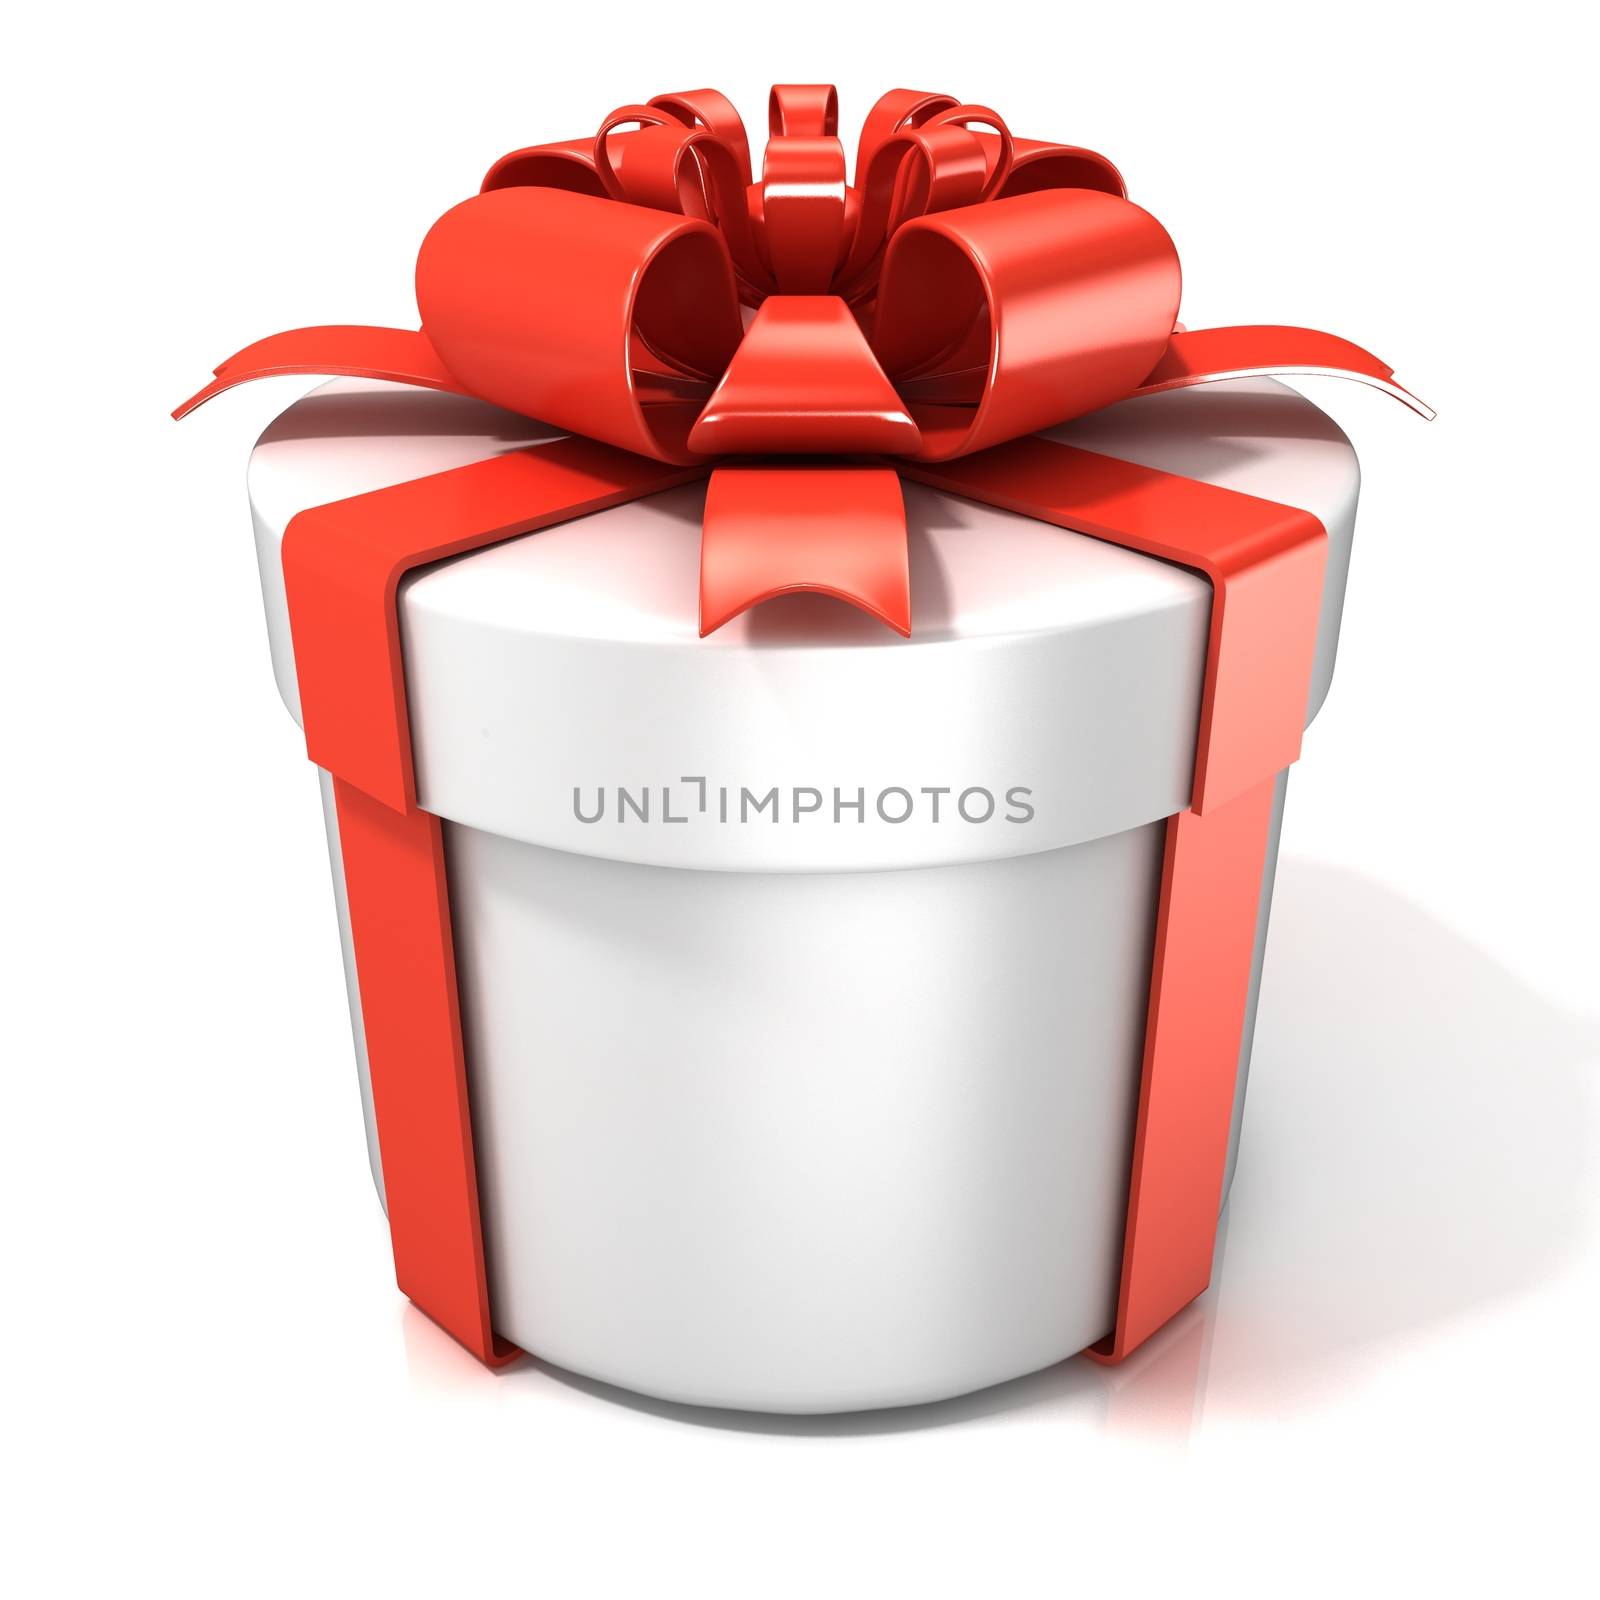 White cylinder gift box isolated on white background